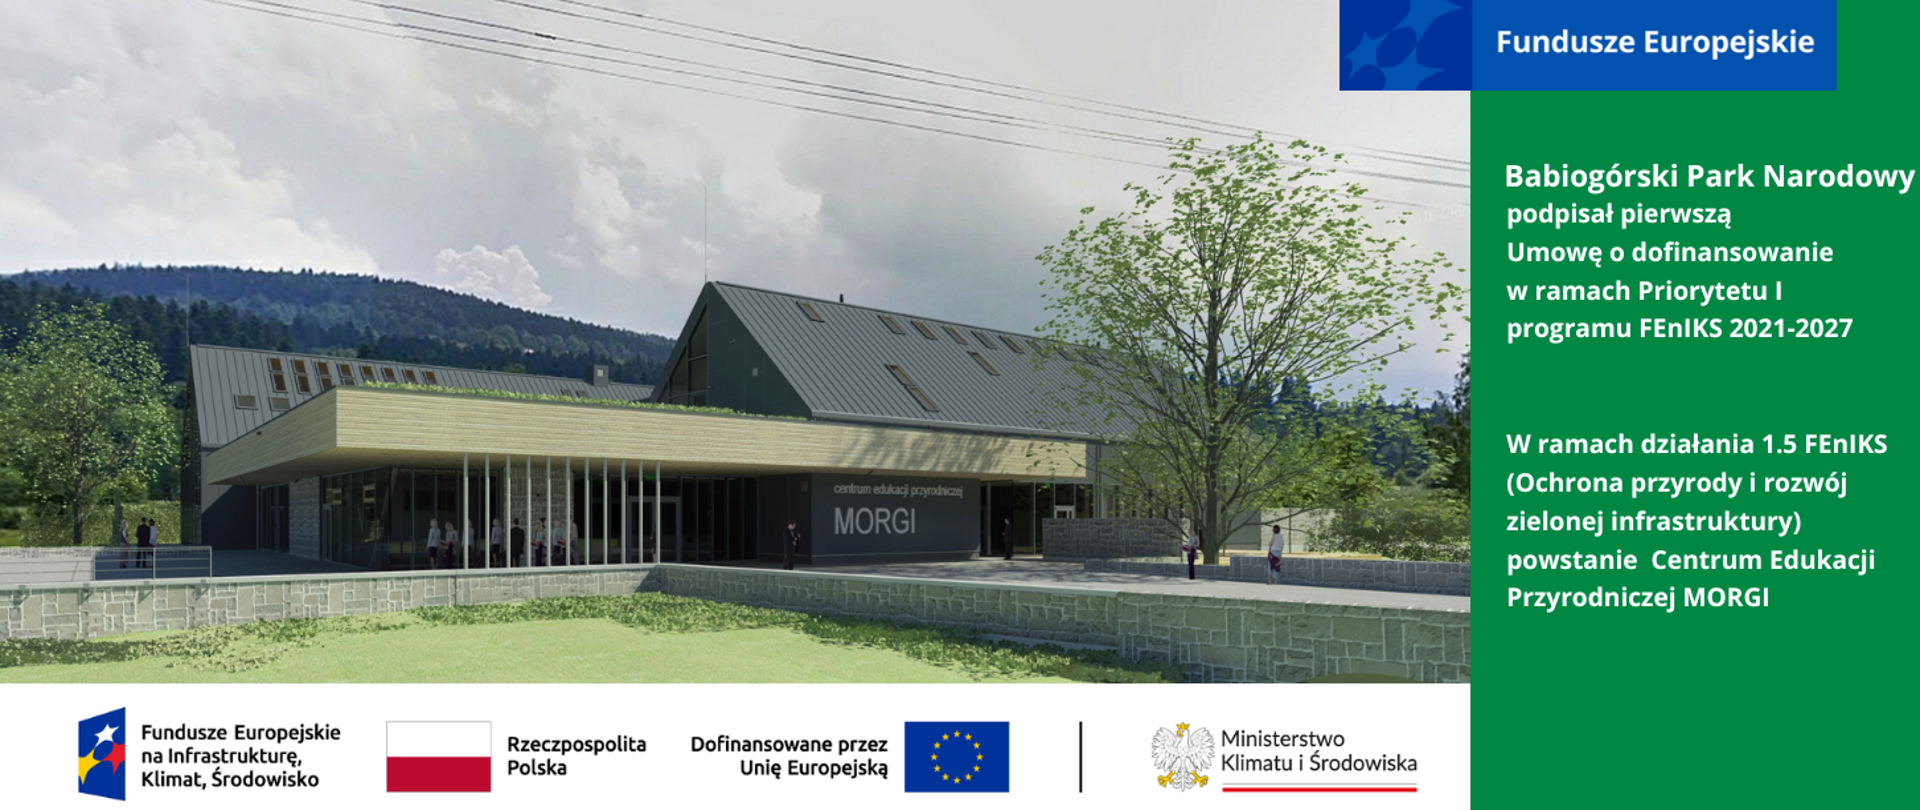 Wizualizacja poglądowa budynku Centrum Edukacji Przyrodniczej Morgi, pod wizualizacją ciąg logotypów, po prawej stronie informacje o projekcie.